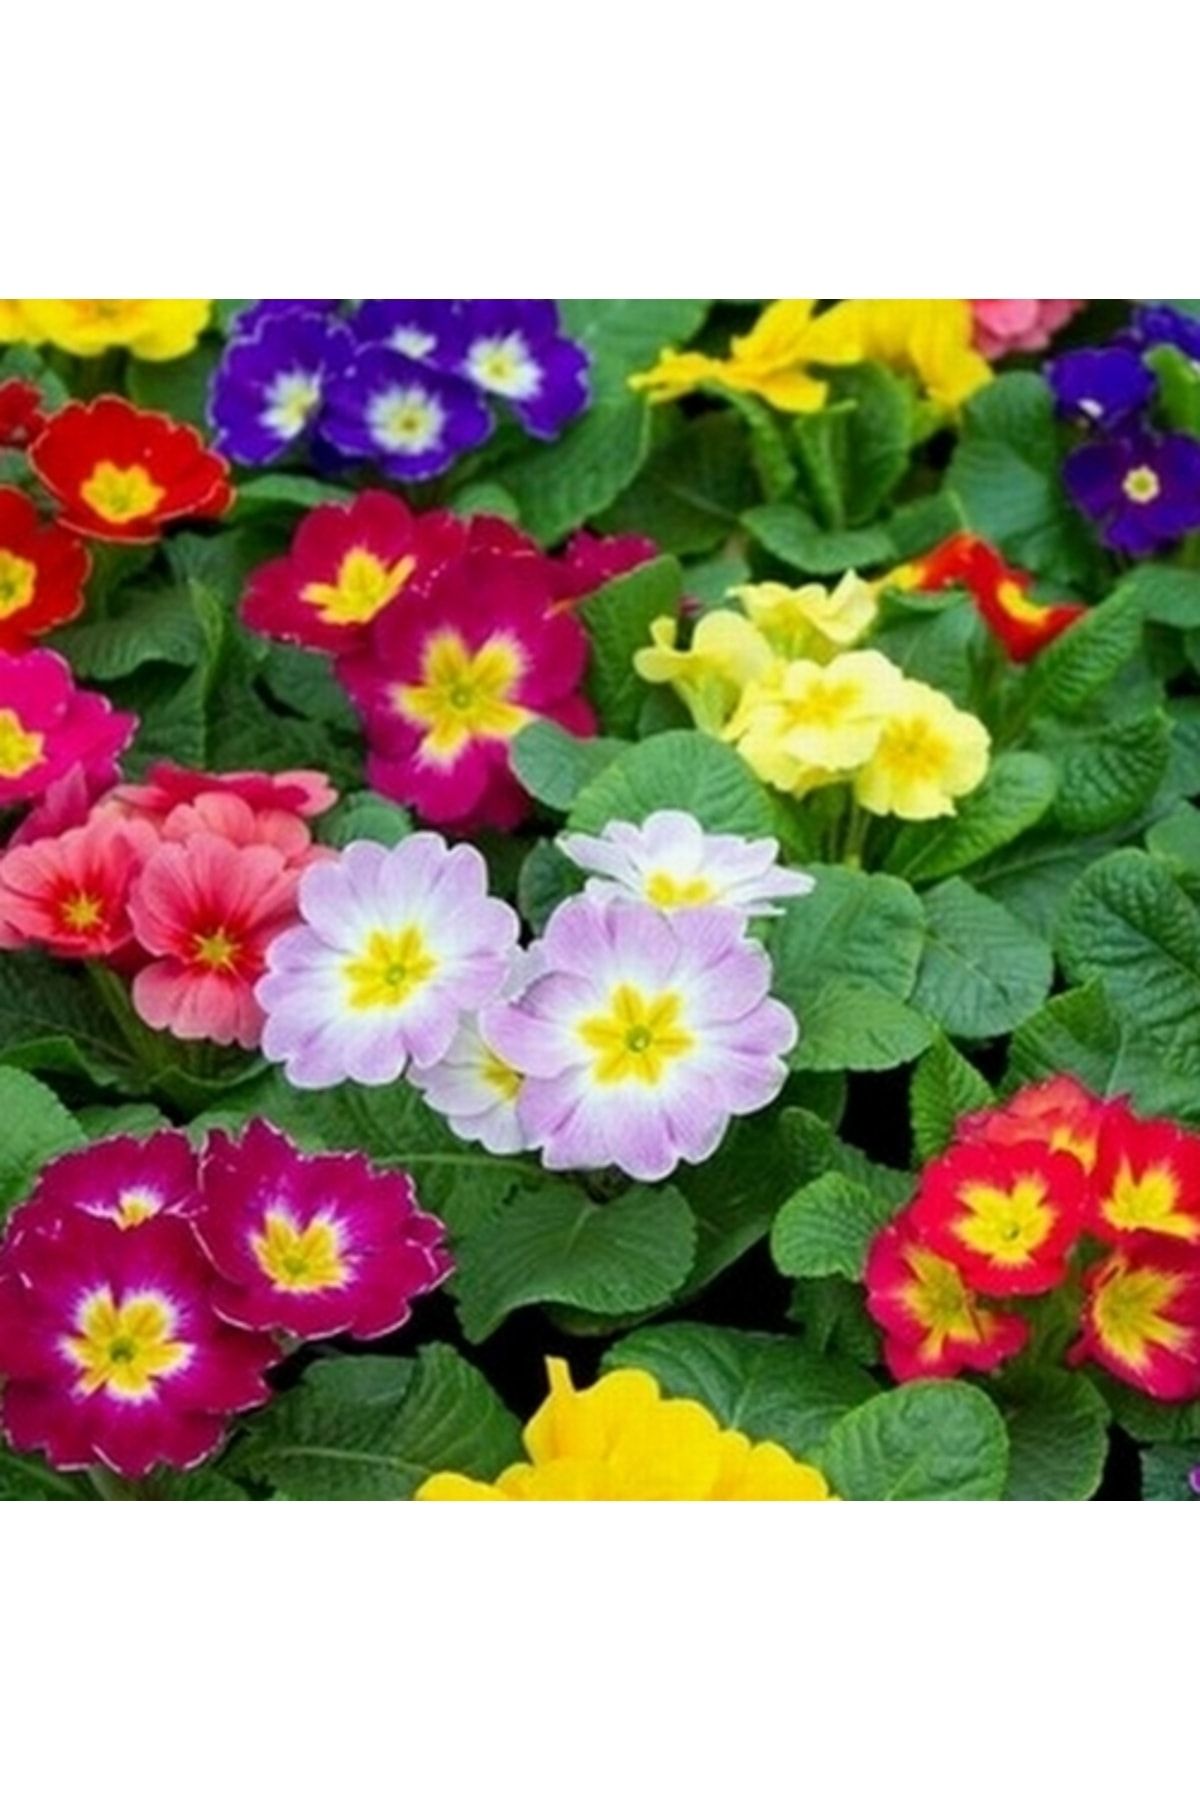 Day 50 Adet 10 Farklı Renk Çuha Çiçek Tohumu + 10 Adet Hediye K.renk Zambak Çiçek Tohumu